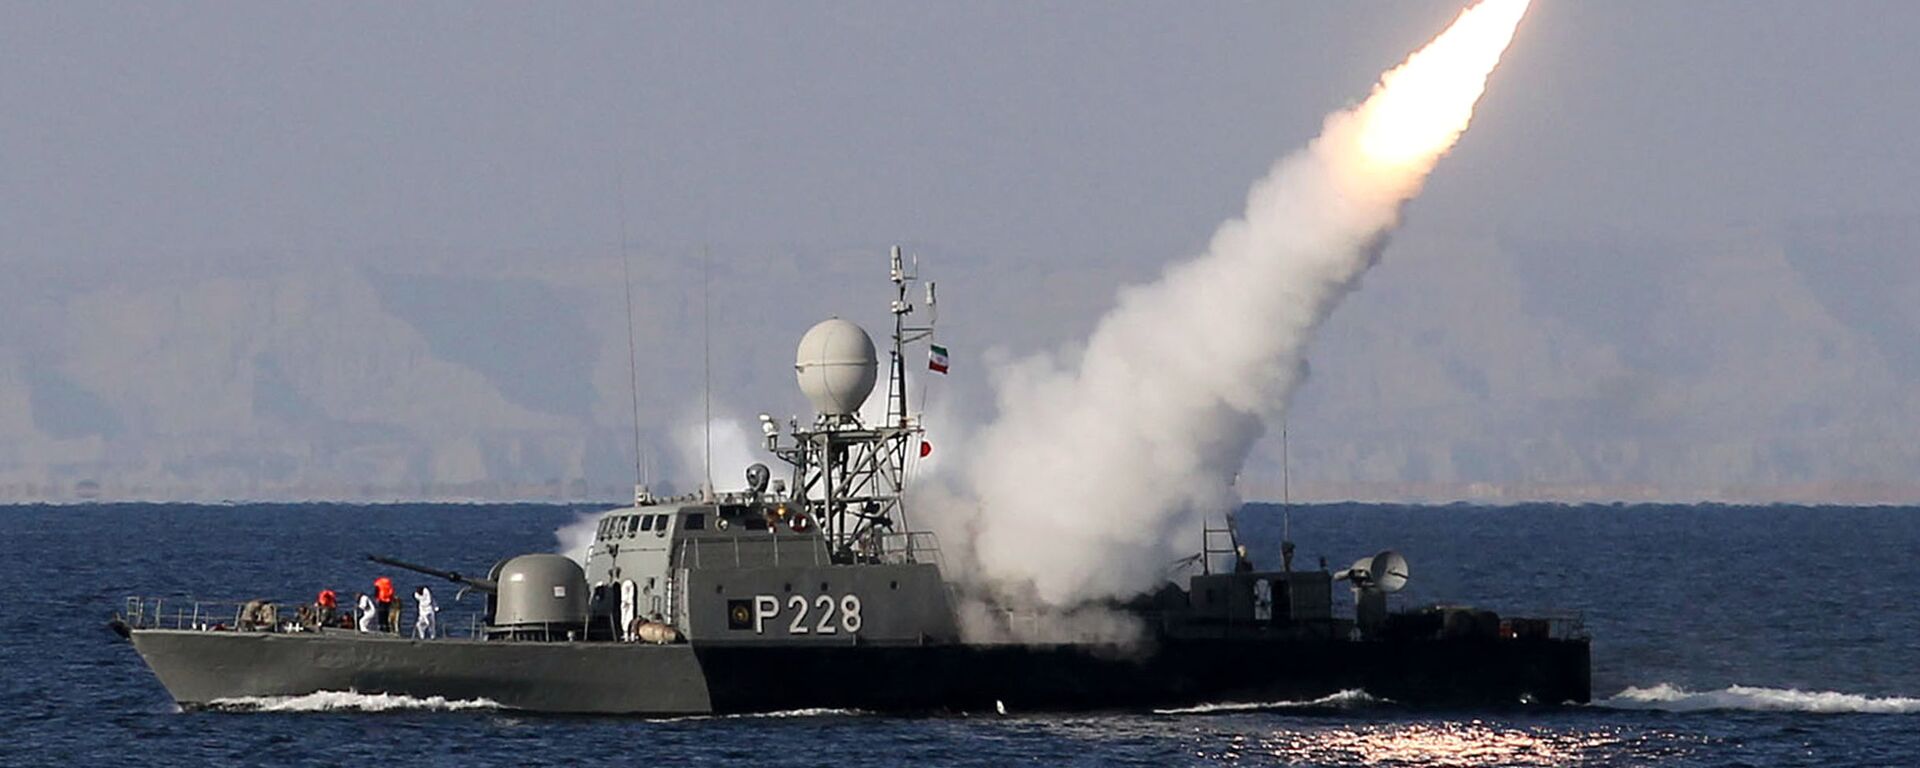 تبادل آتش توپخانه ای در رزمایش دریایی ایران و روسیه - اسپوتنیک ایران  , 1920, 15.02.2021